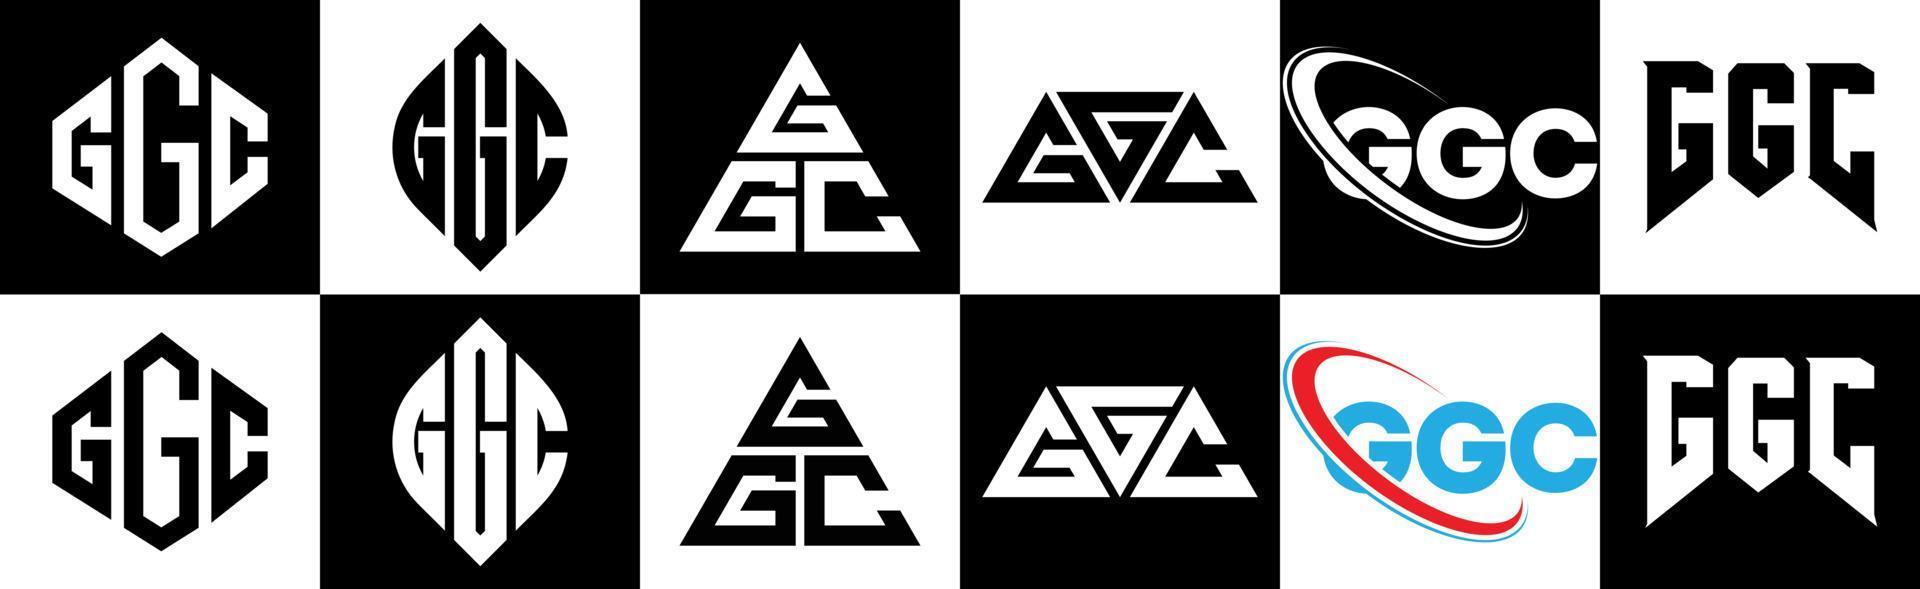 ggc brief logo ontwerp in zes stijl. ggc veelhoek, cirkel, driehoek, zeshoek, vlak en gemakkelijk stijl met zwart en wit kleur variatie brief logo reeks in een tekengebied. ggc minimalistische en klassiek logo vector